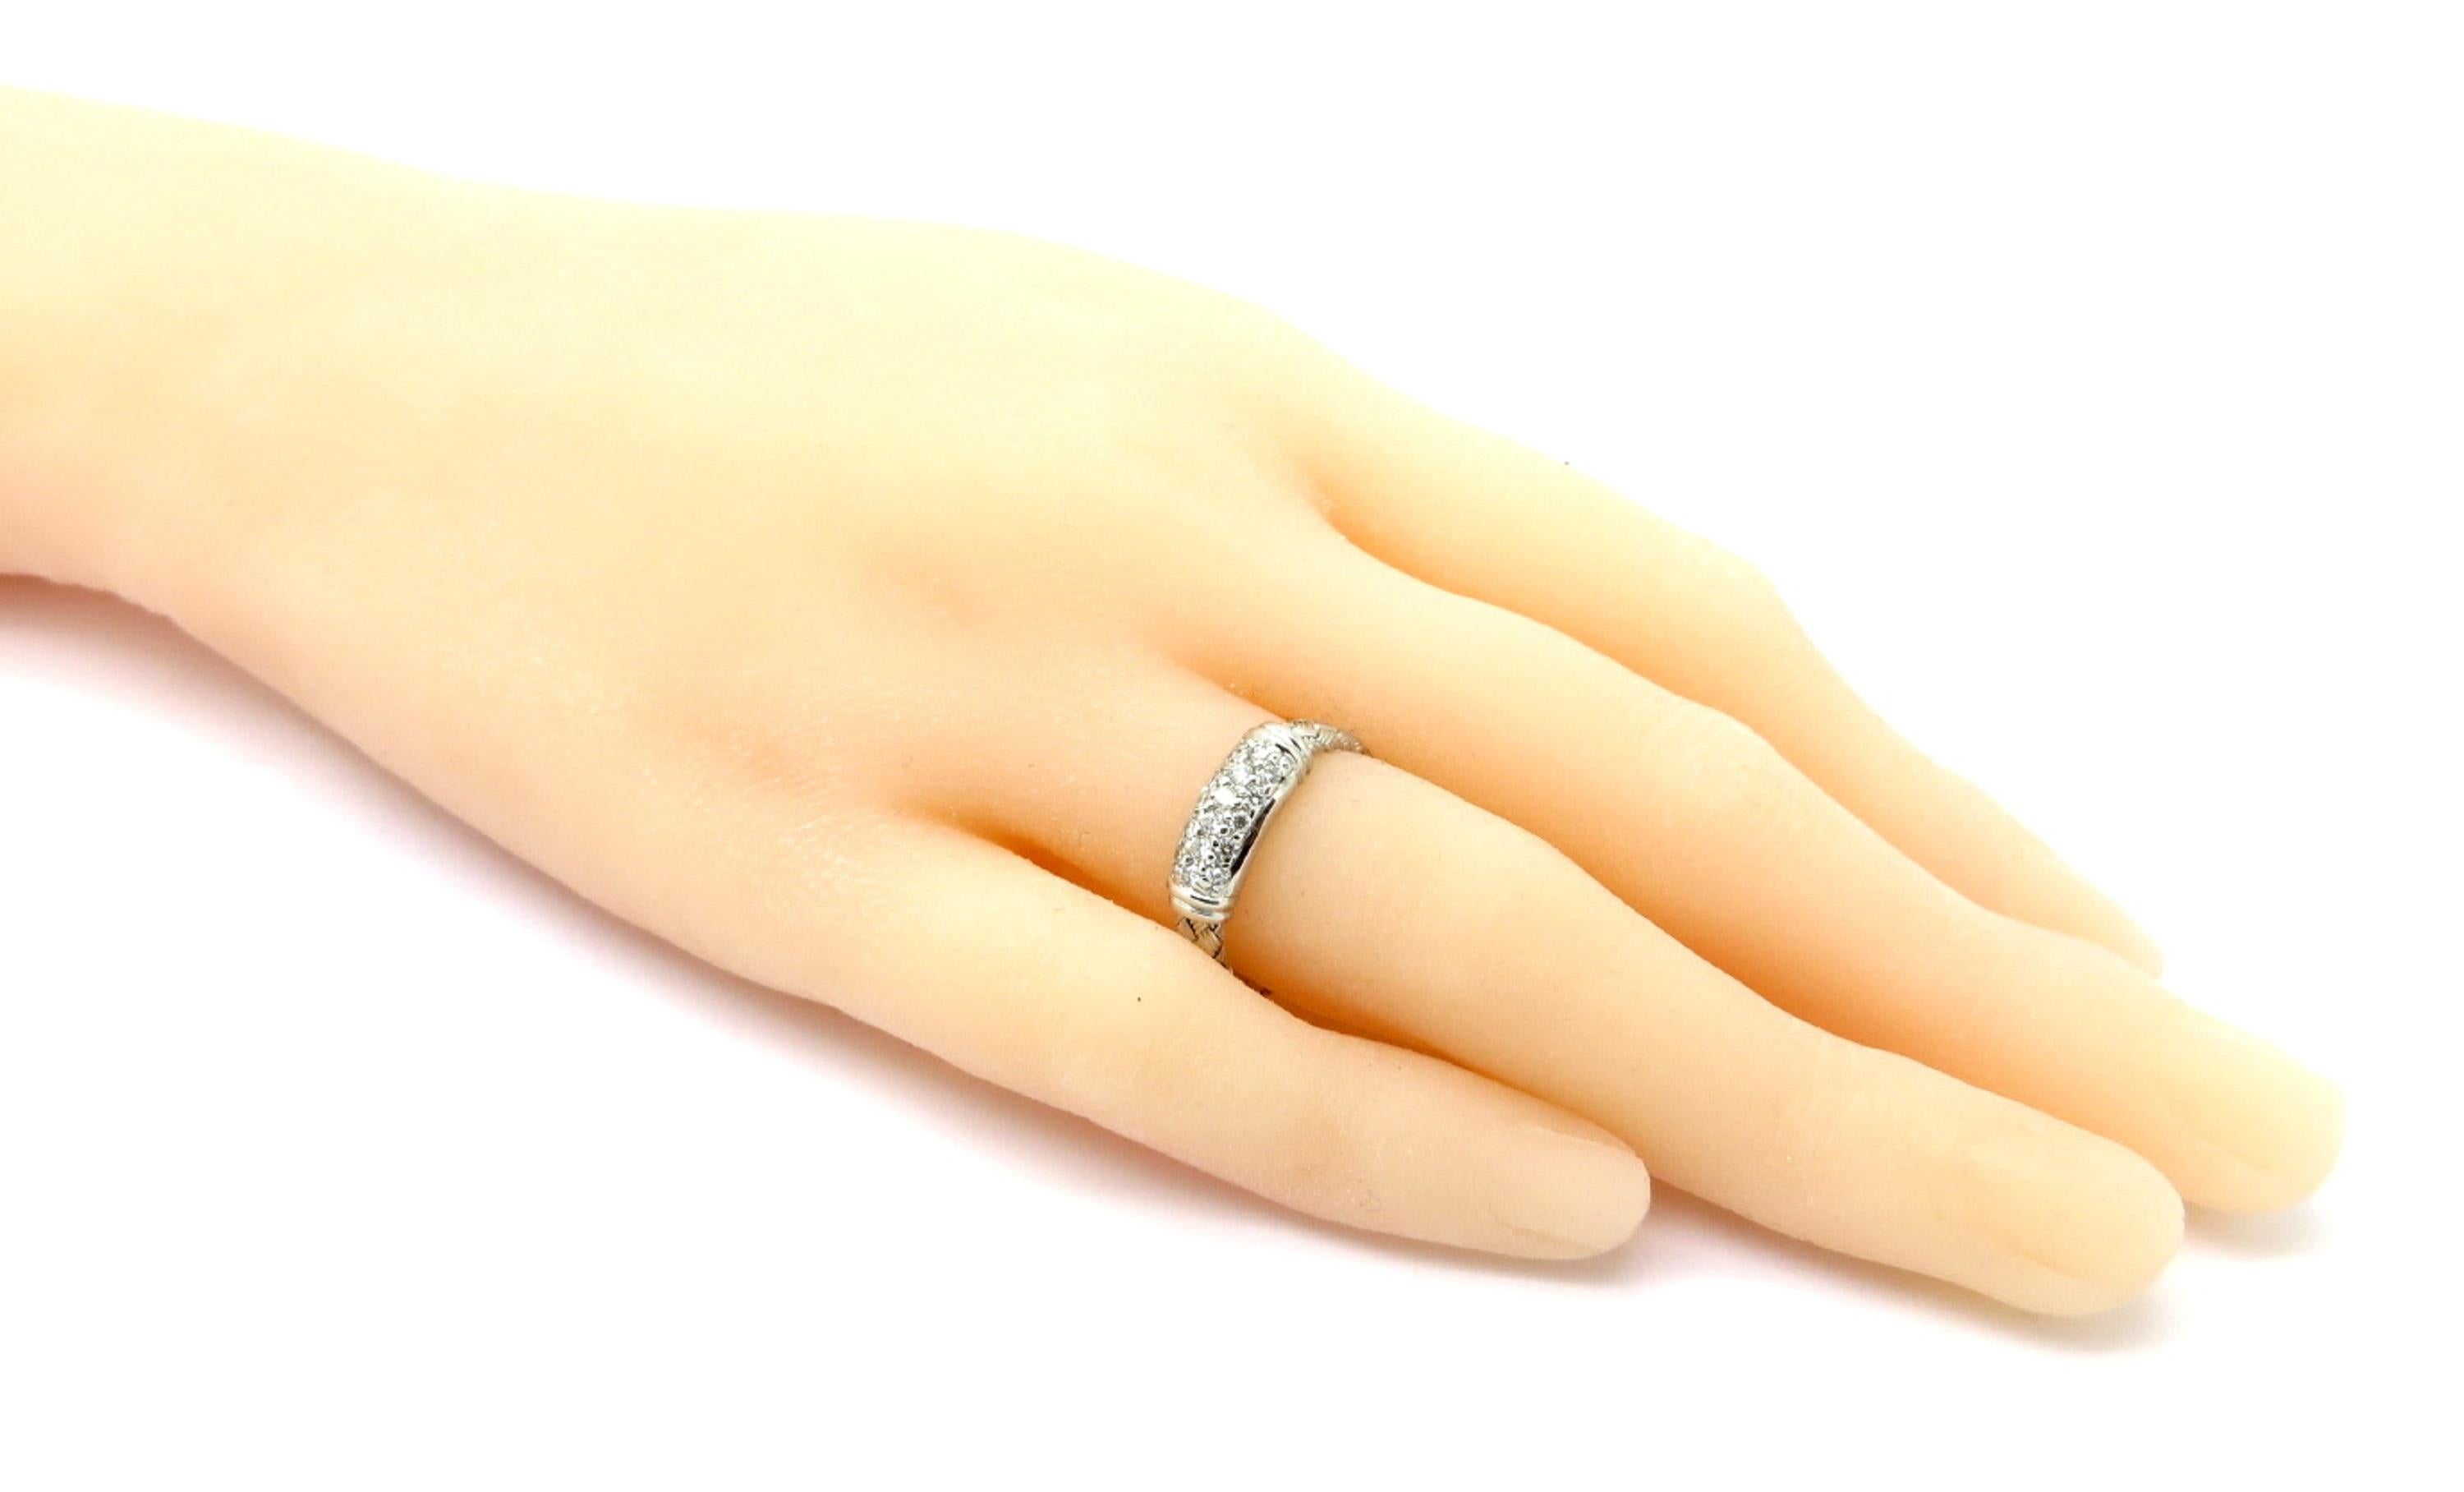 Designer Roberto Coin 18 Karat White Gold Pave Diamond Weaved Ring 2